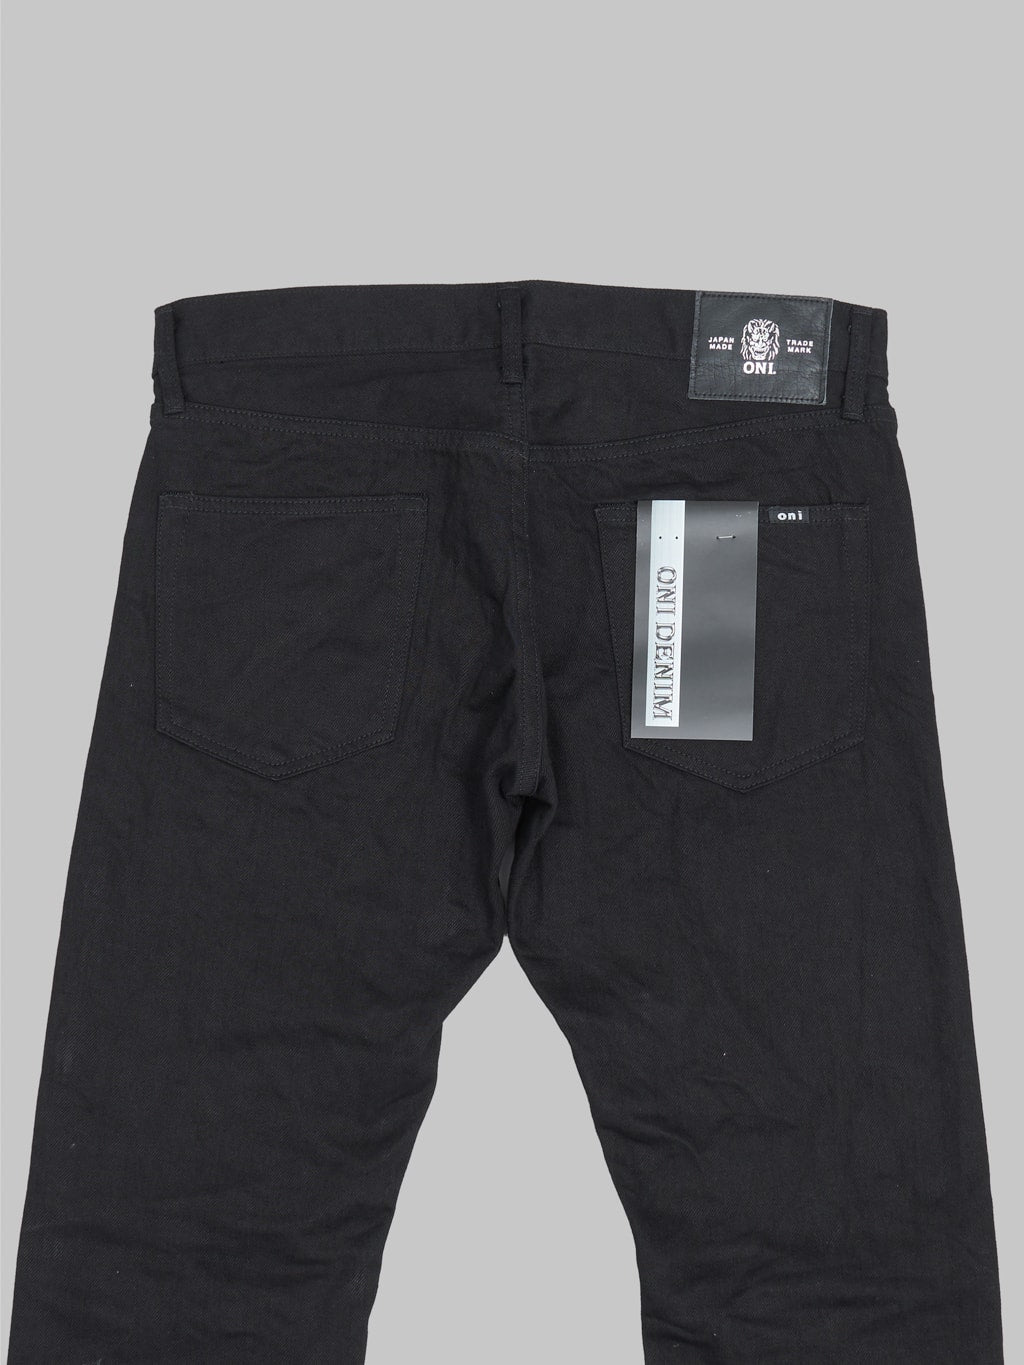 ONI Denim 566-13BK "Jet Black Denim" 13oz Semi-Tight Straight Jeans